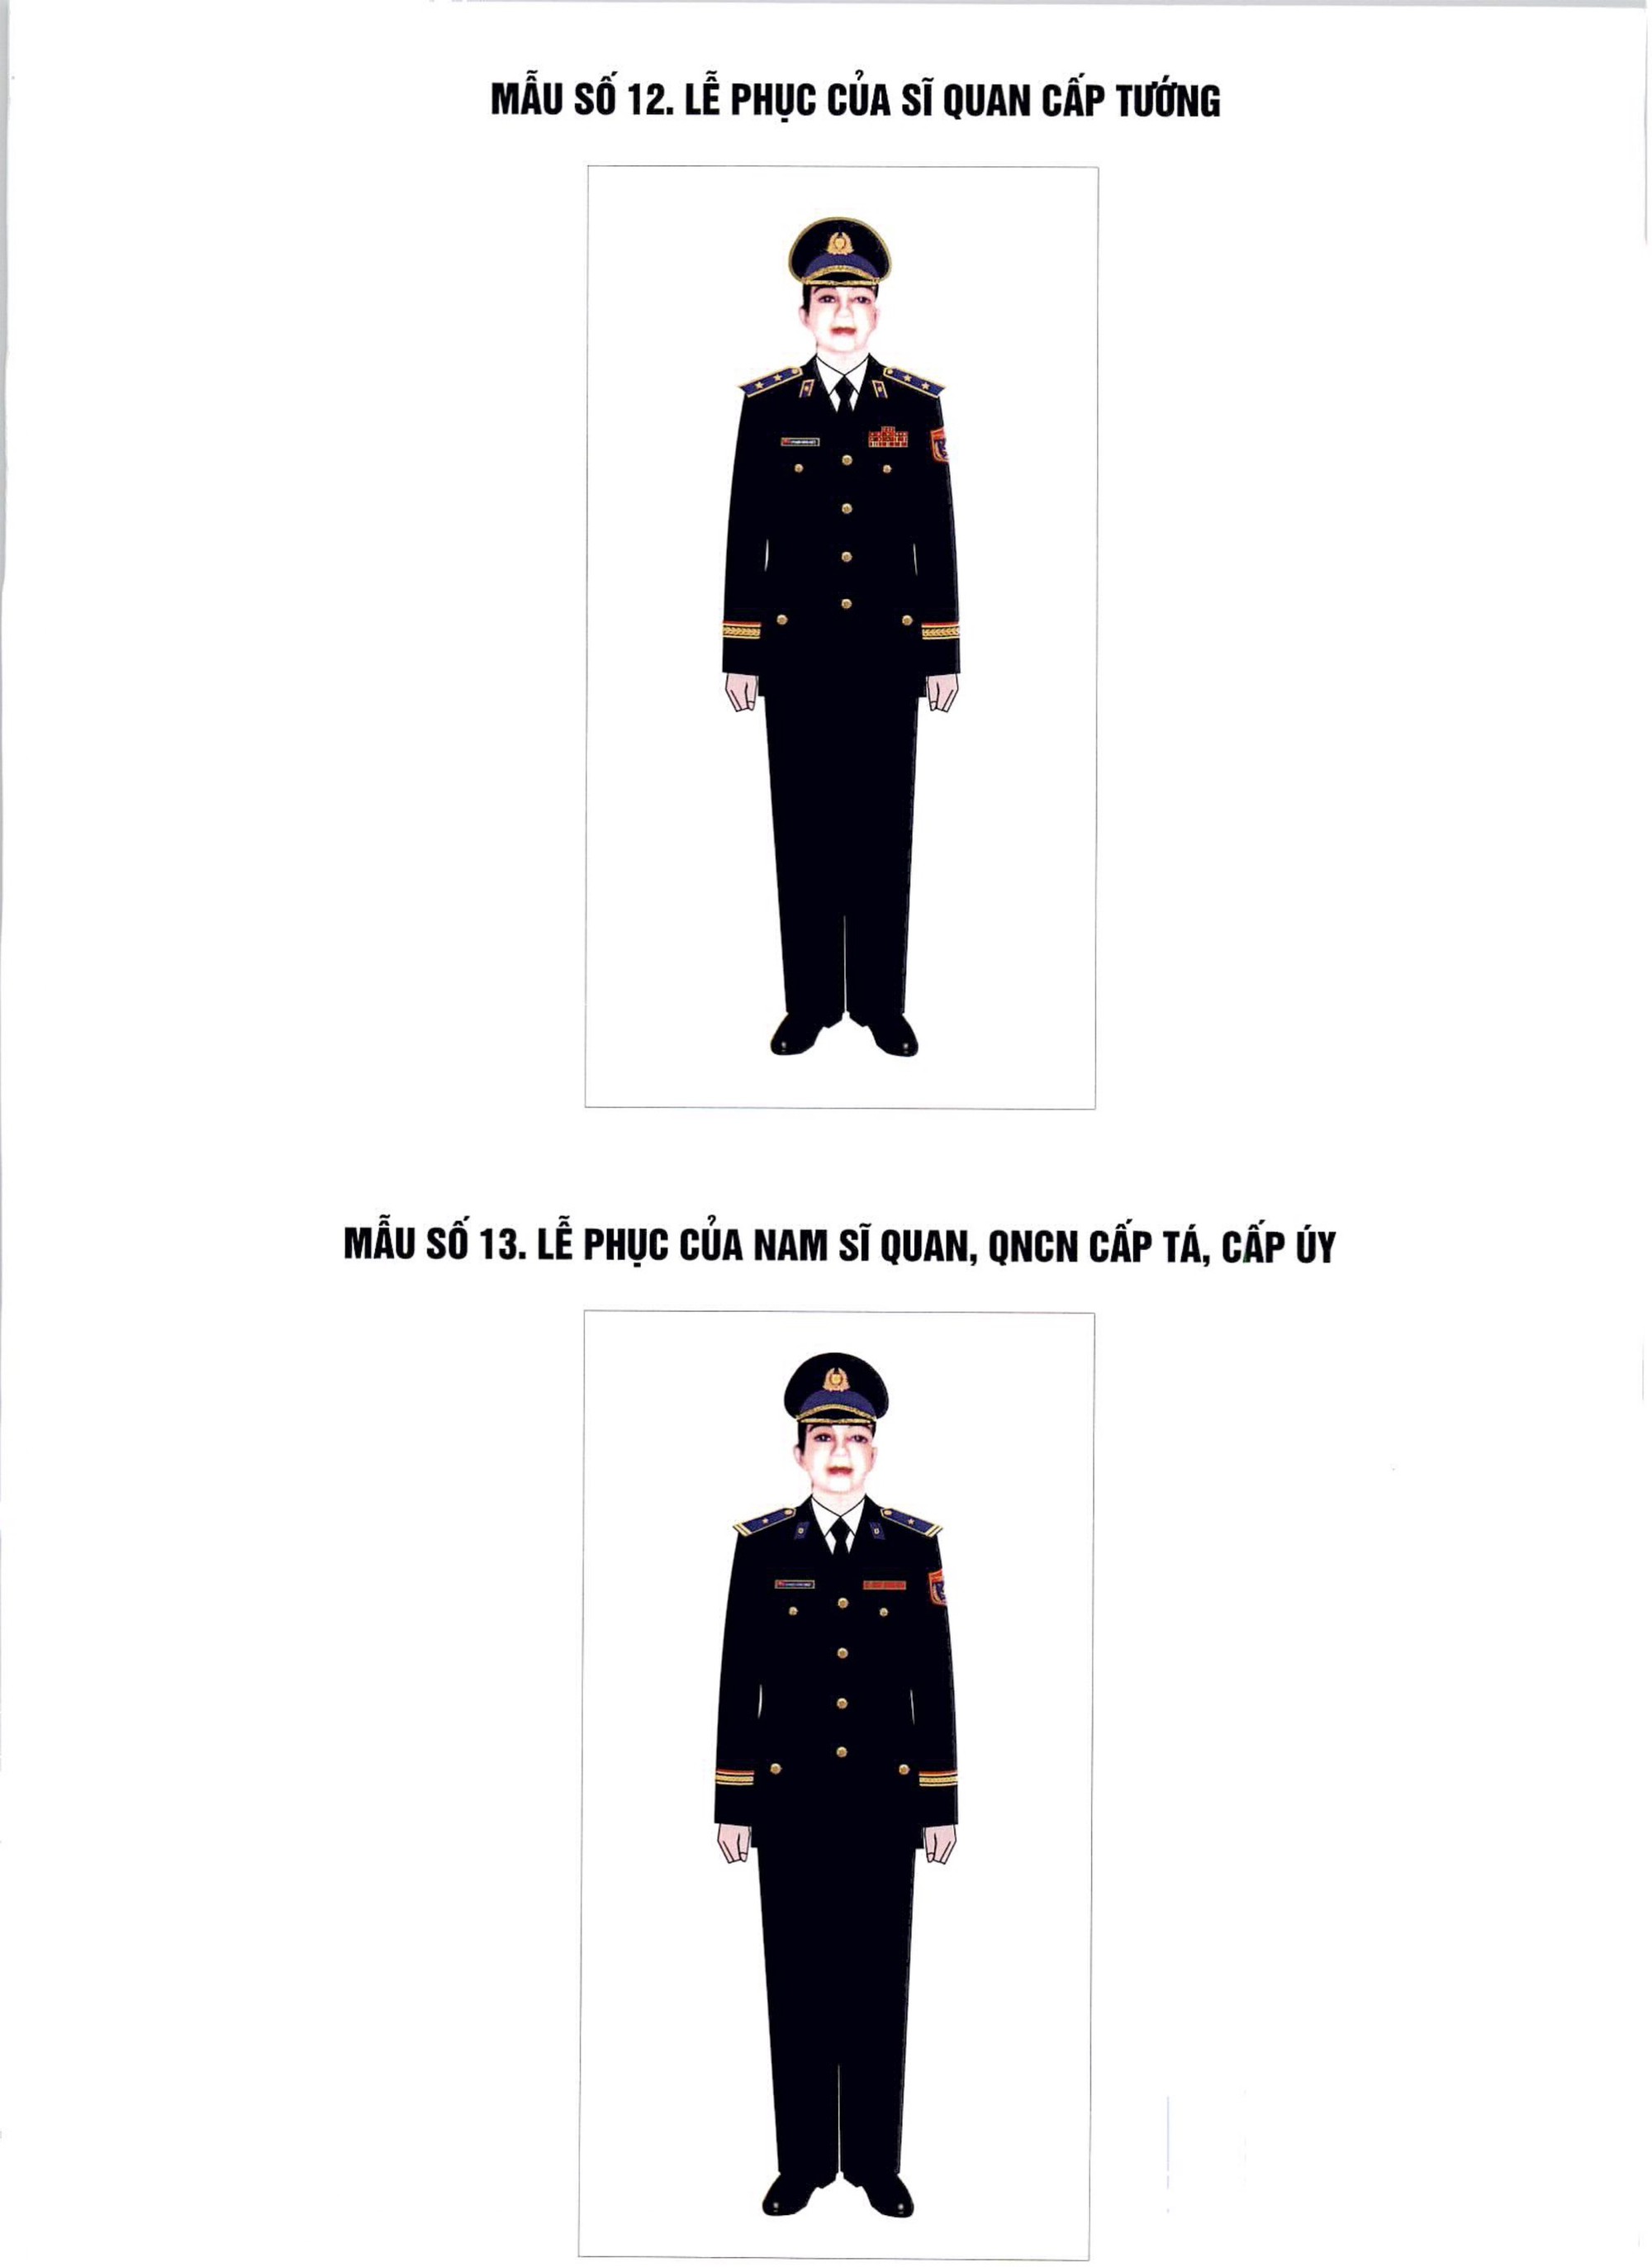 Quy định mới của Chính phủ về trang phục dự lễ với sĩ quan Quân đội- Ảnh 1.